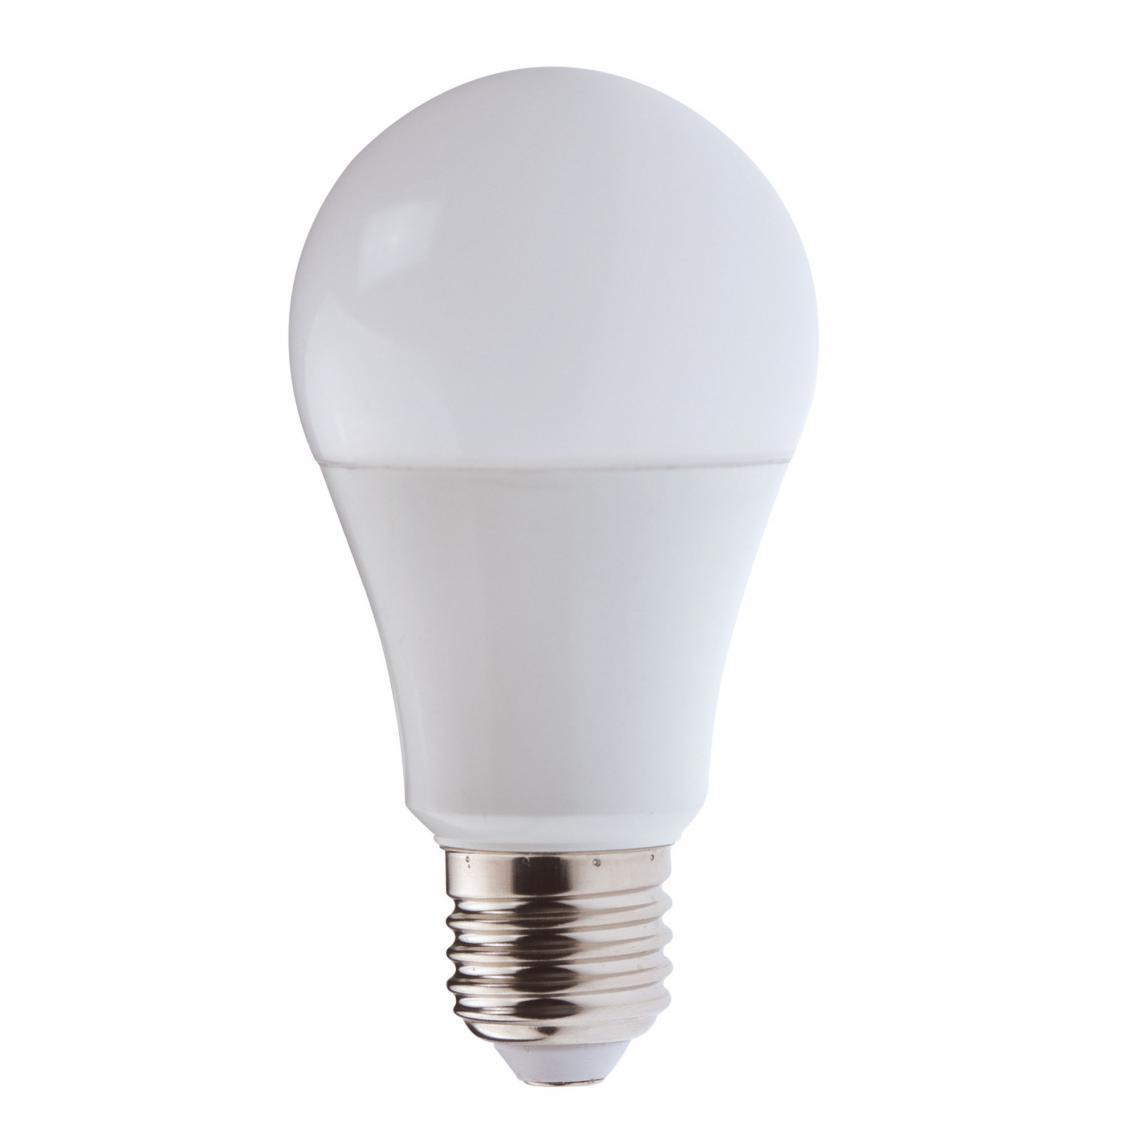 Velamp - Ampoule LED SMD, standard A65, 20W / 2300lm, culot E27, 6500K - Ampoules LED